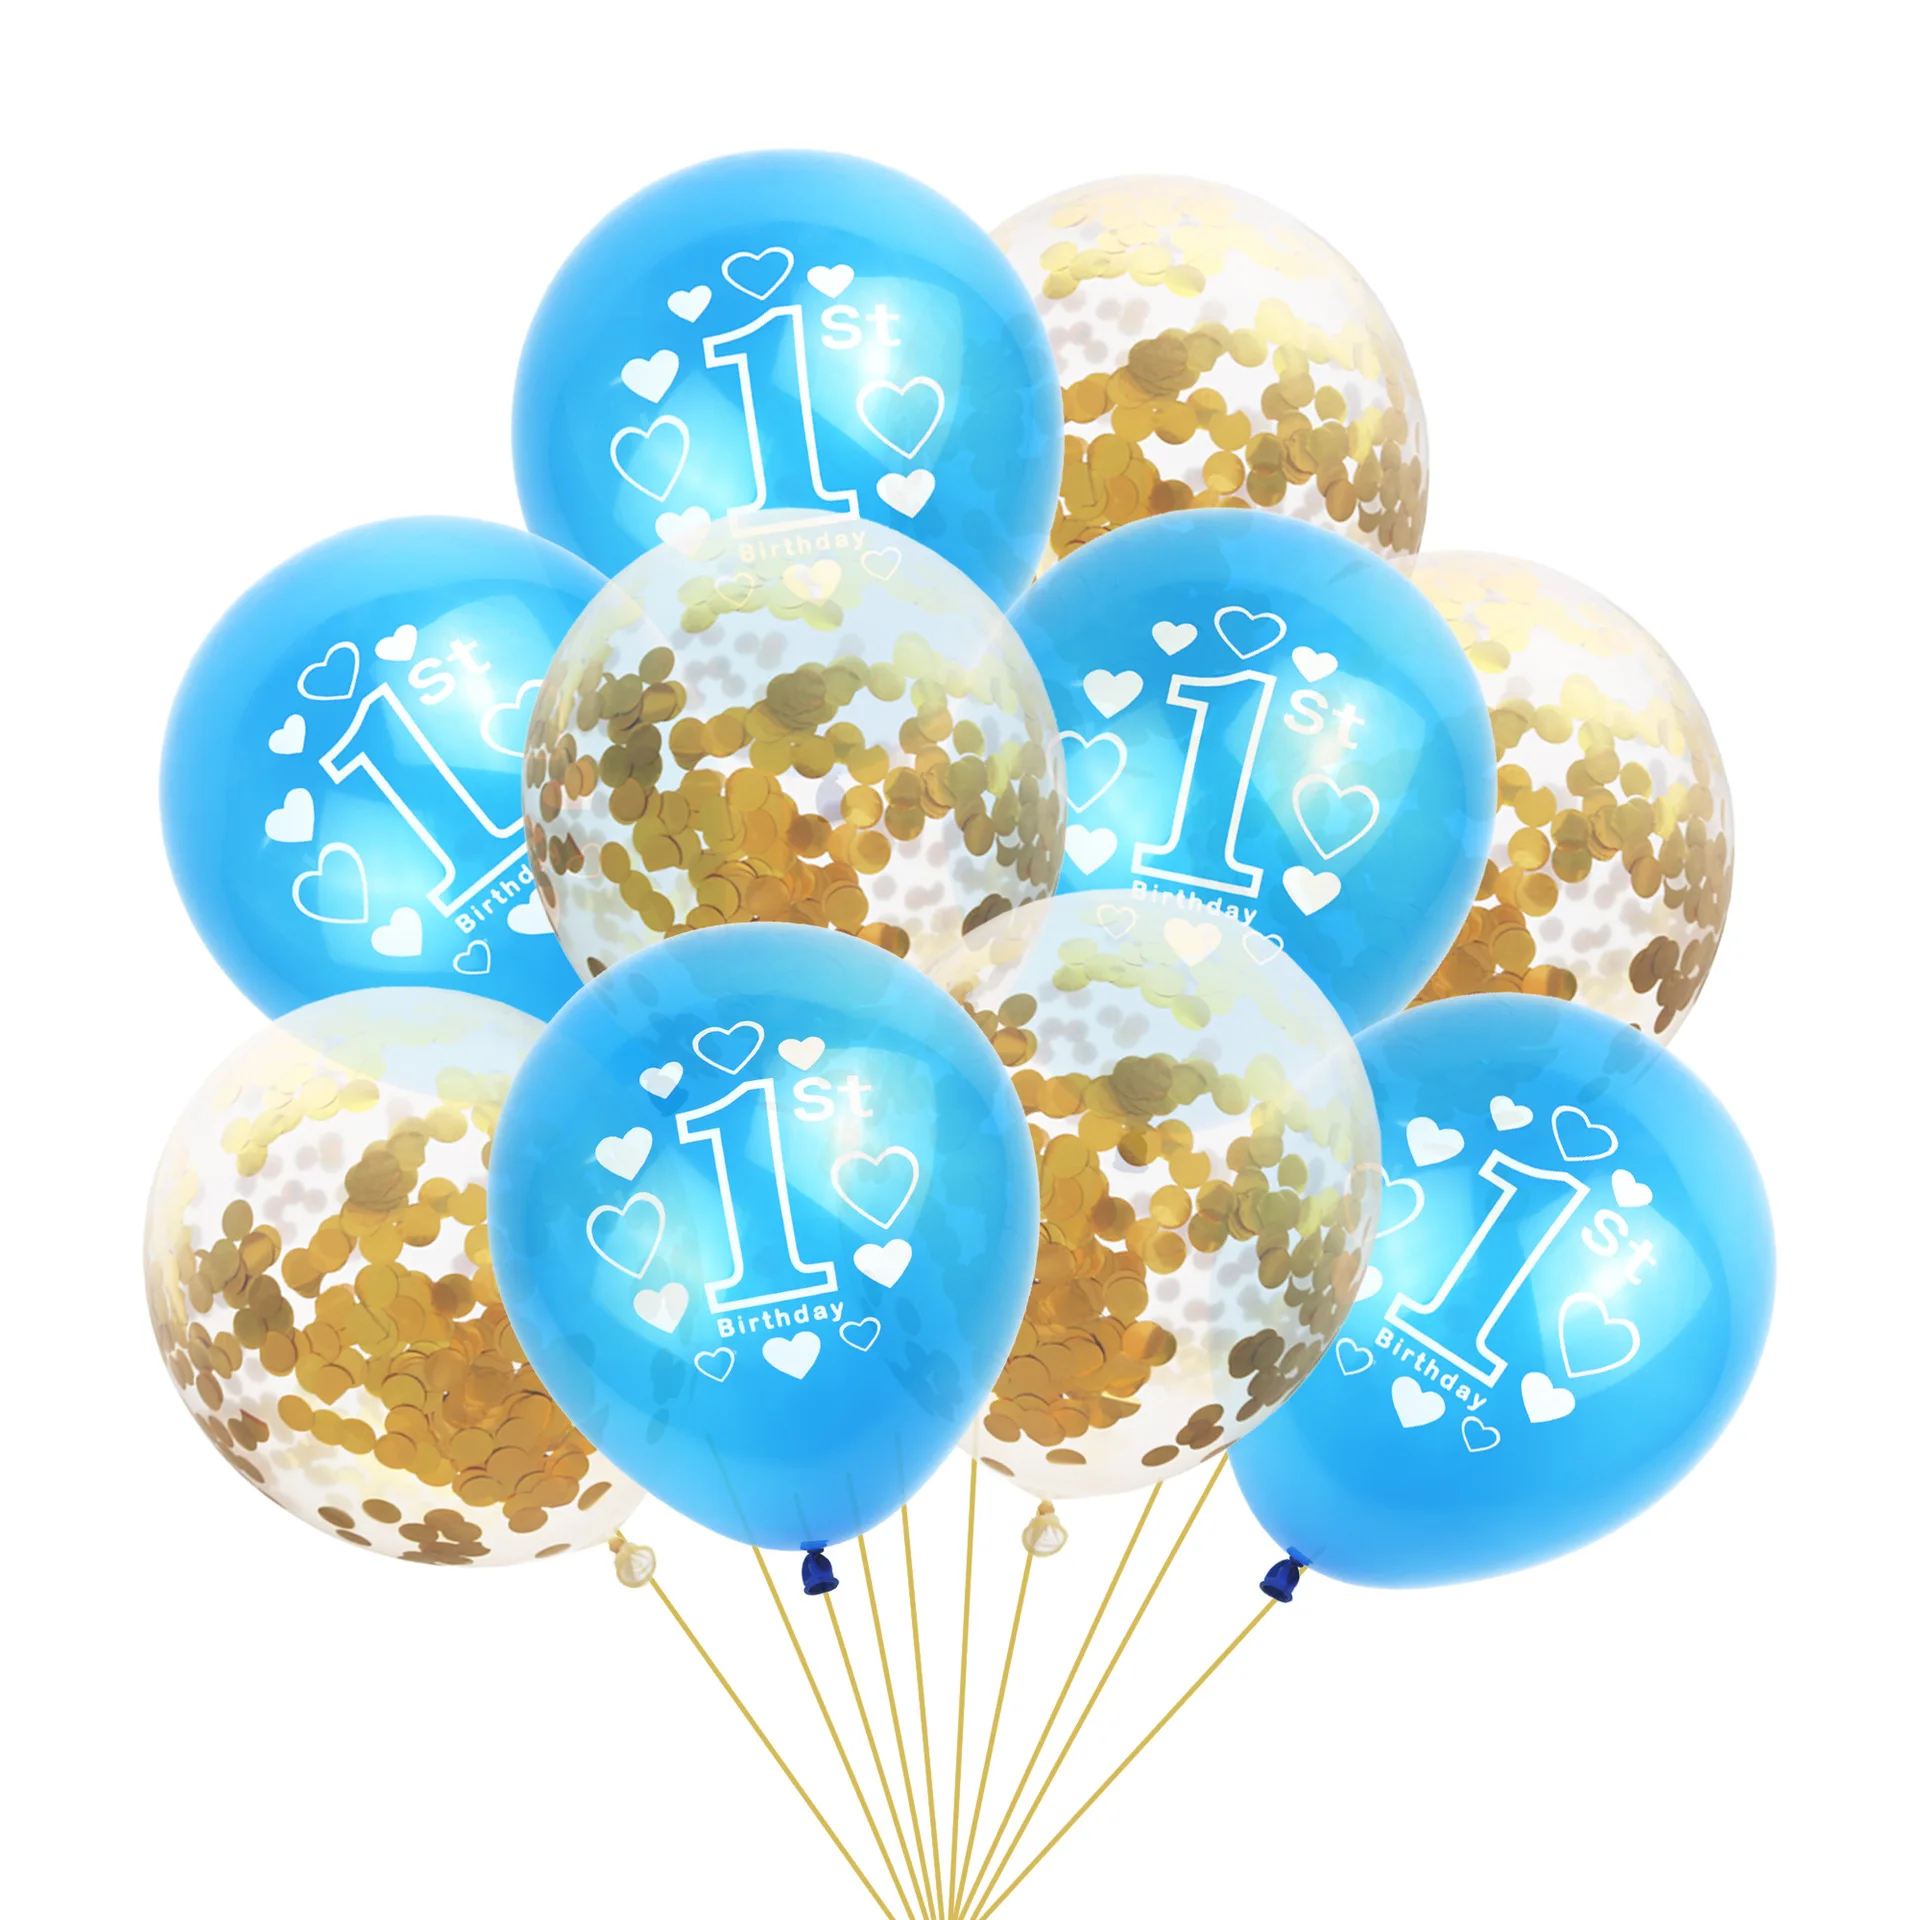 NICROLANDEE 10 шт./компл. 1st День рождения Декор с надписью Number One печатных Baby Shower конфетти воздушные шары с блестками Детские латексные шары - Цвет: Gold Blue